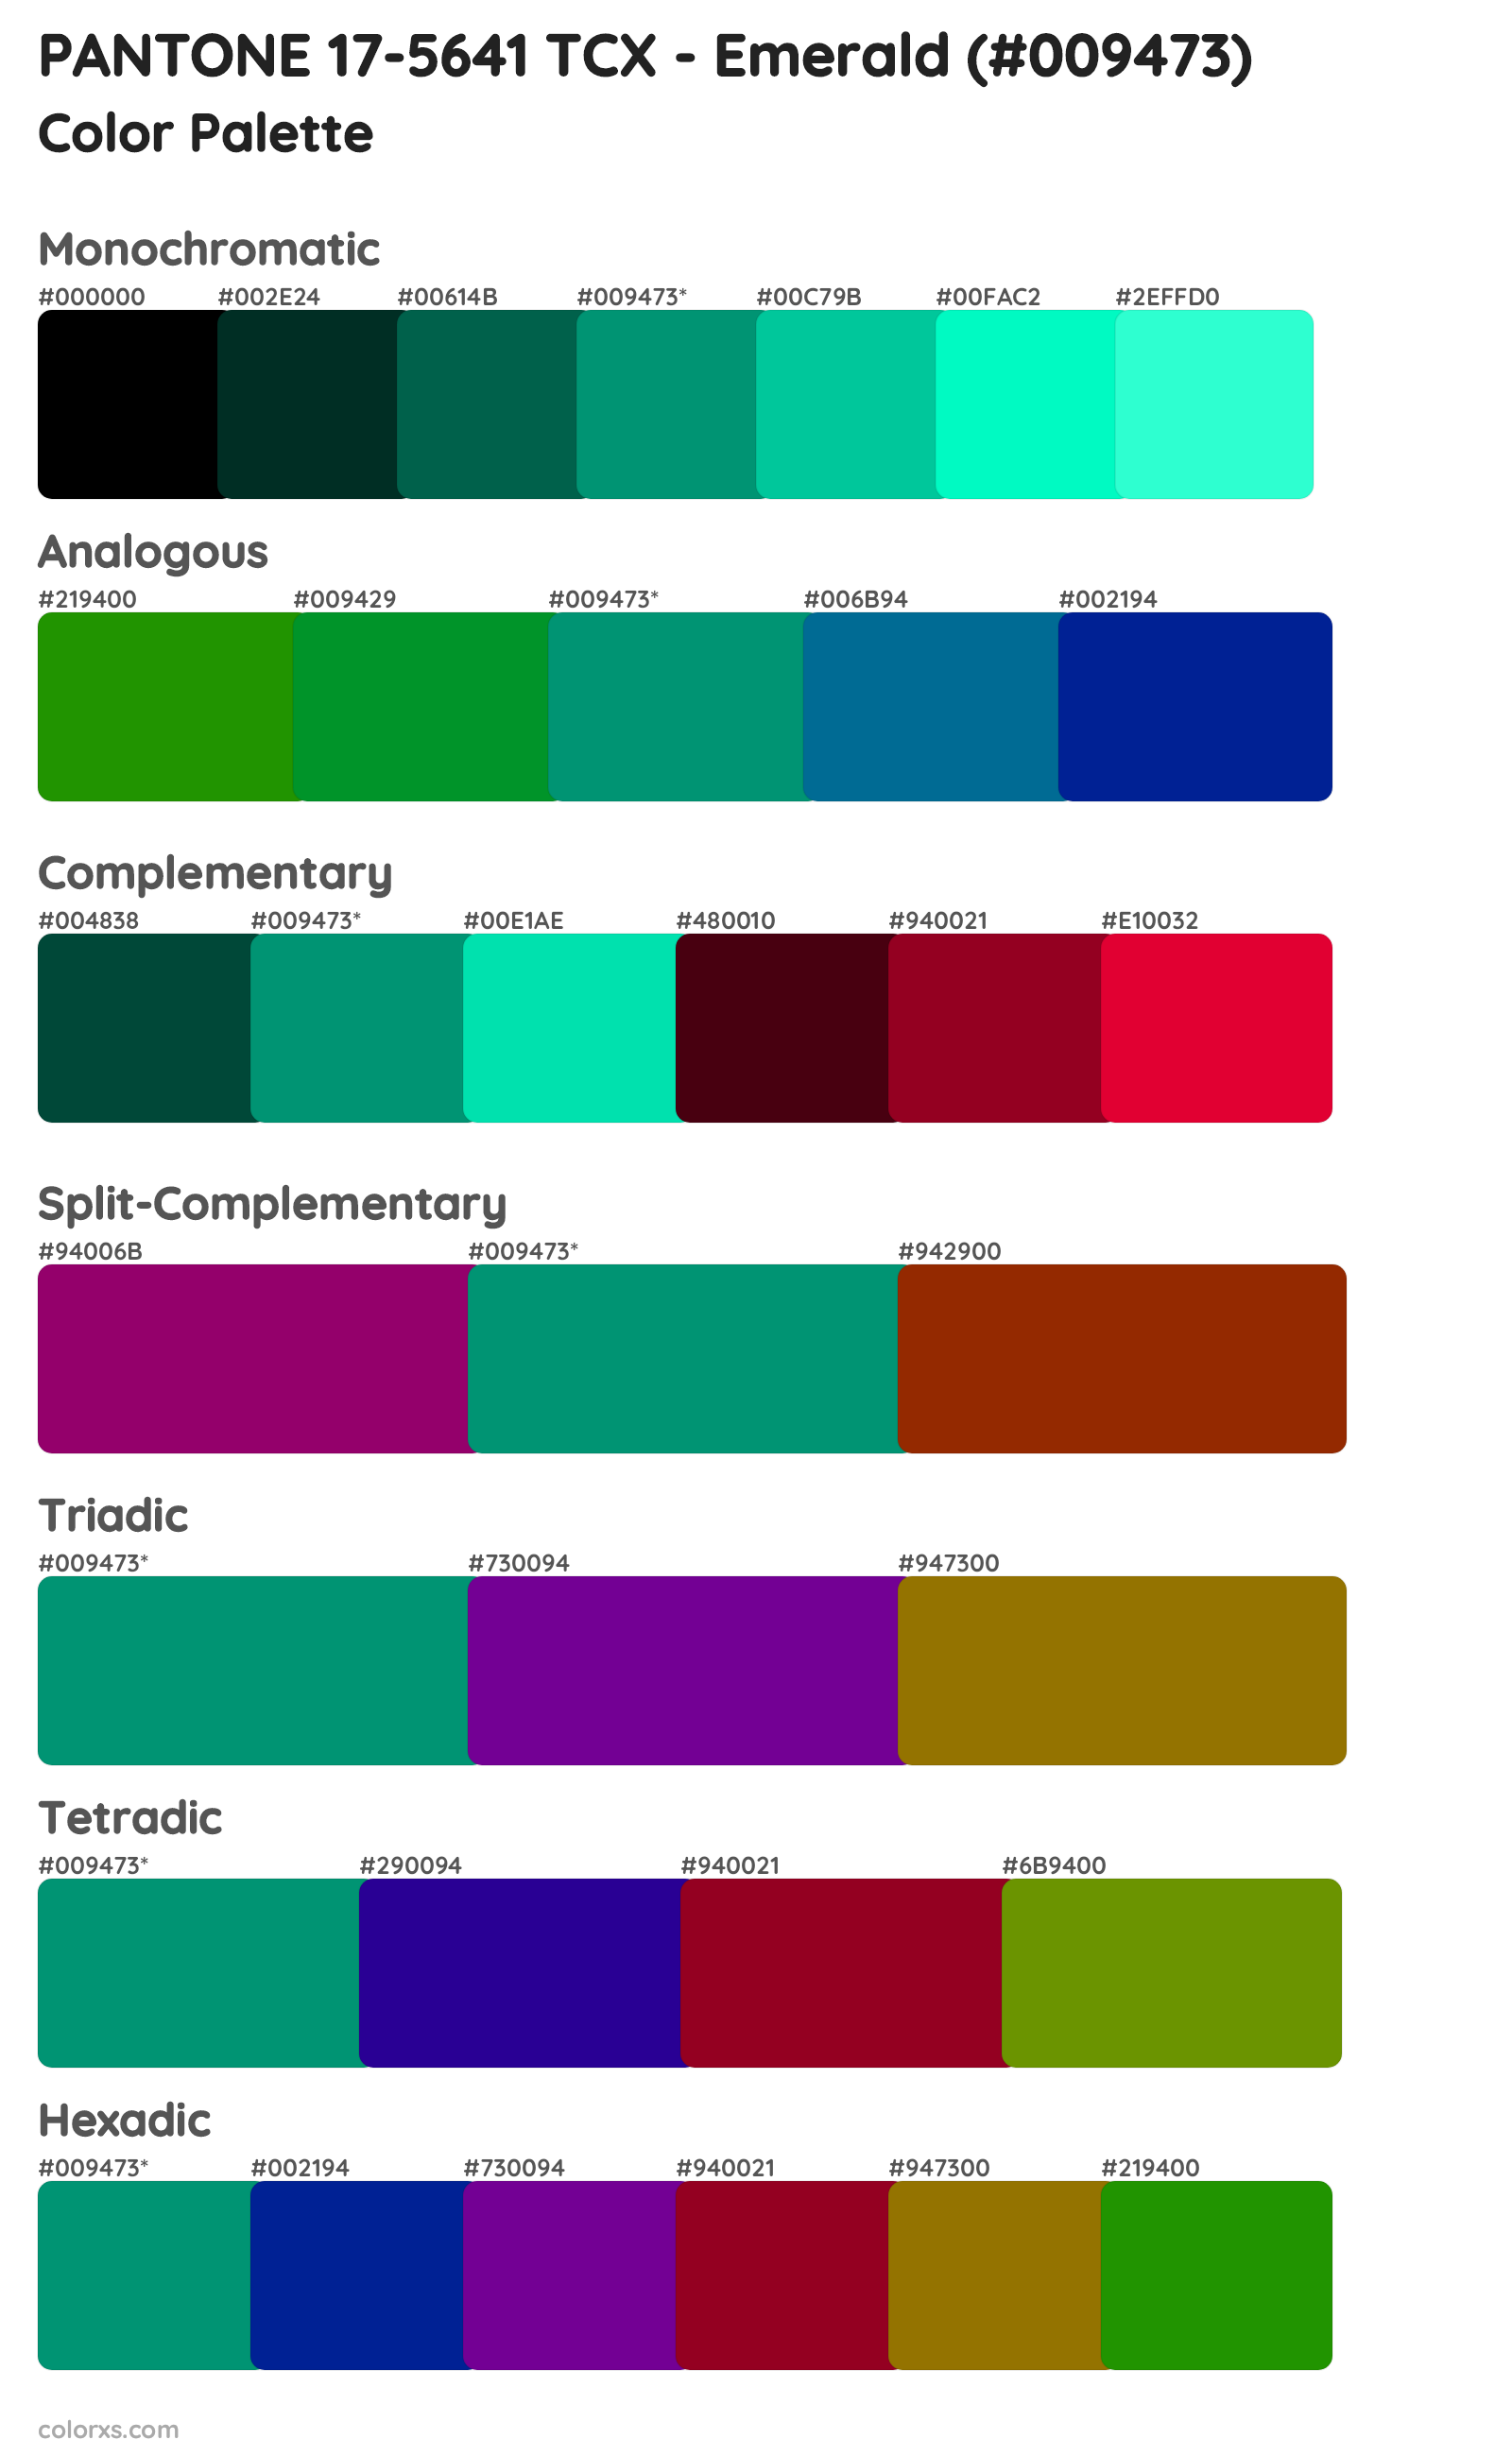 PANTONE 17-5641 TCX - Emerald Color Scheme Palettes